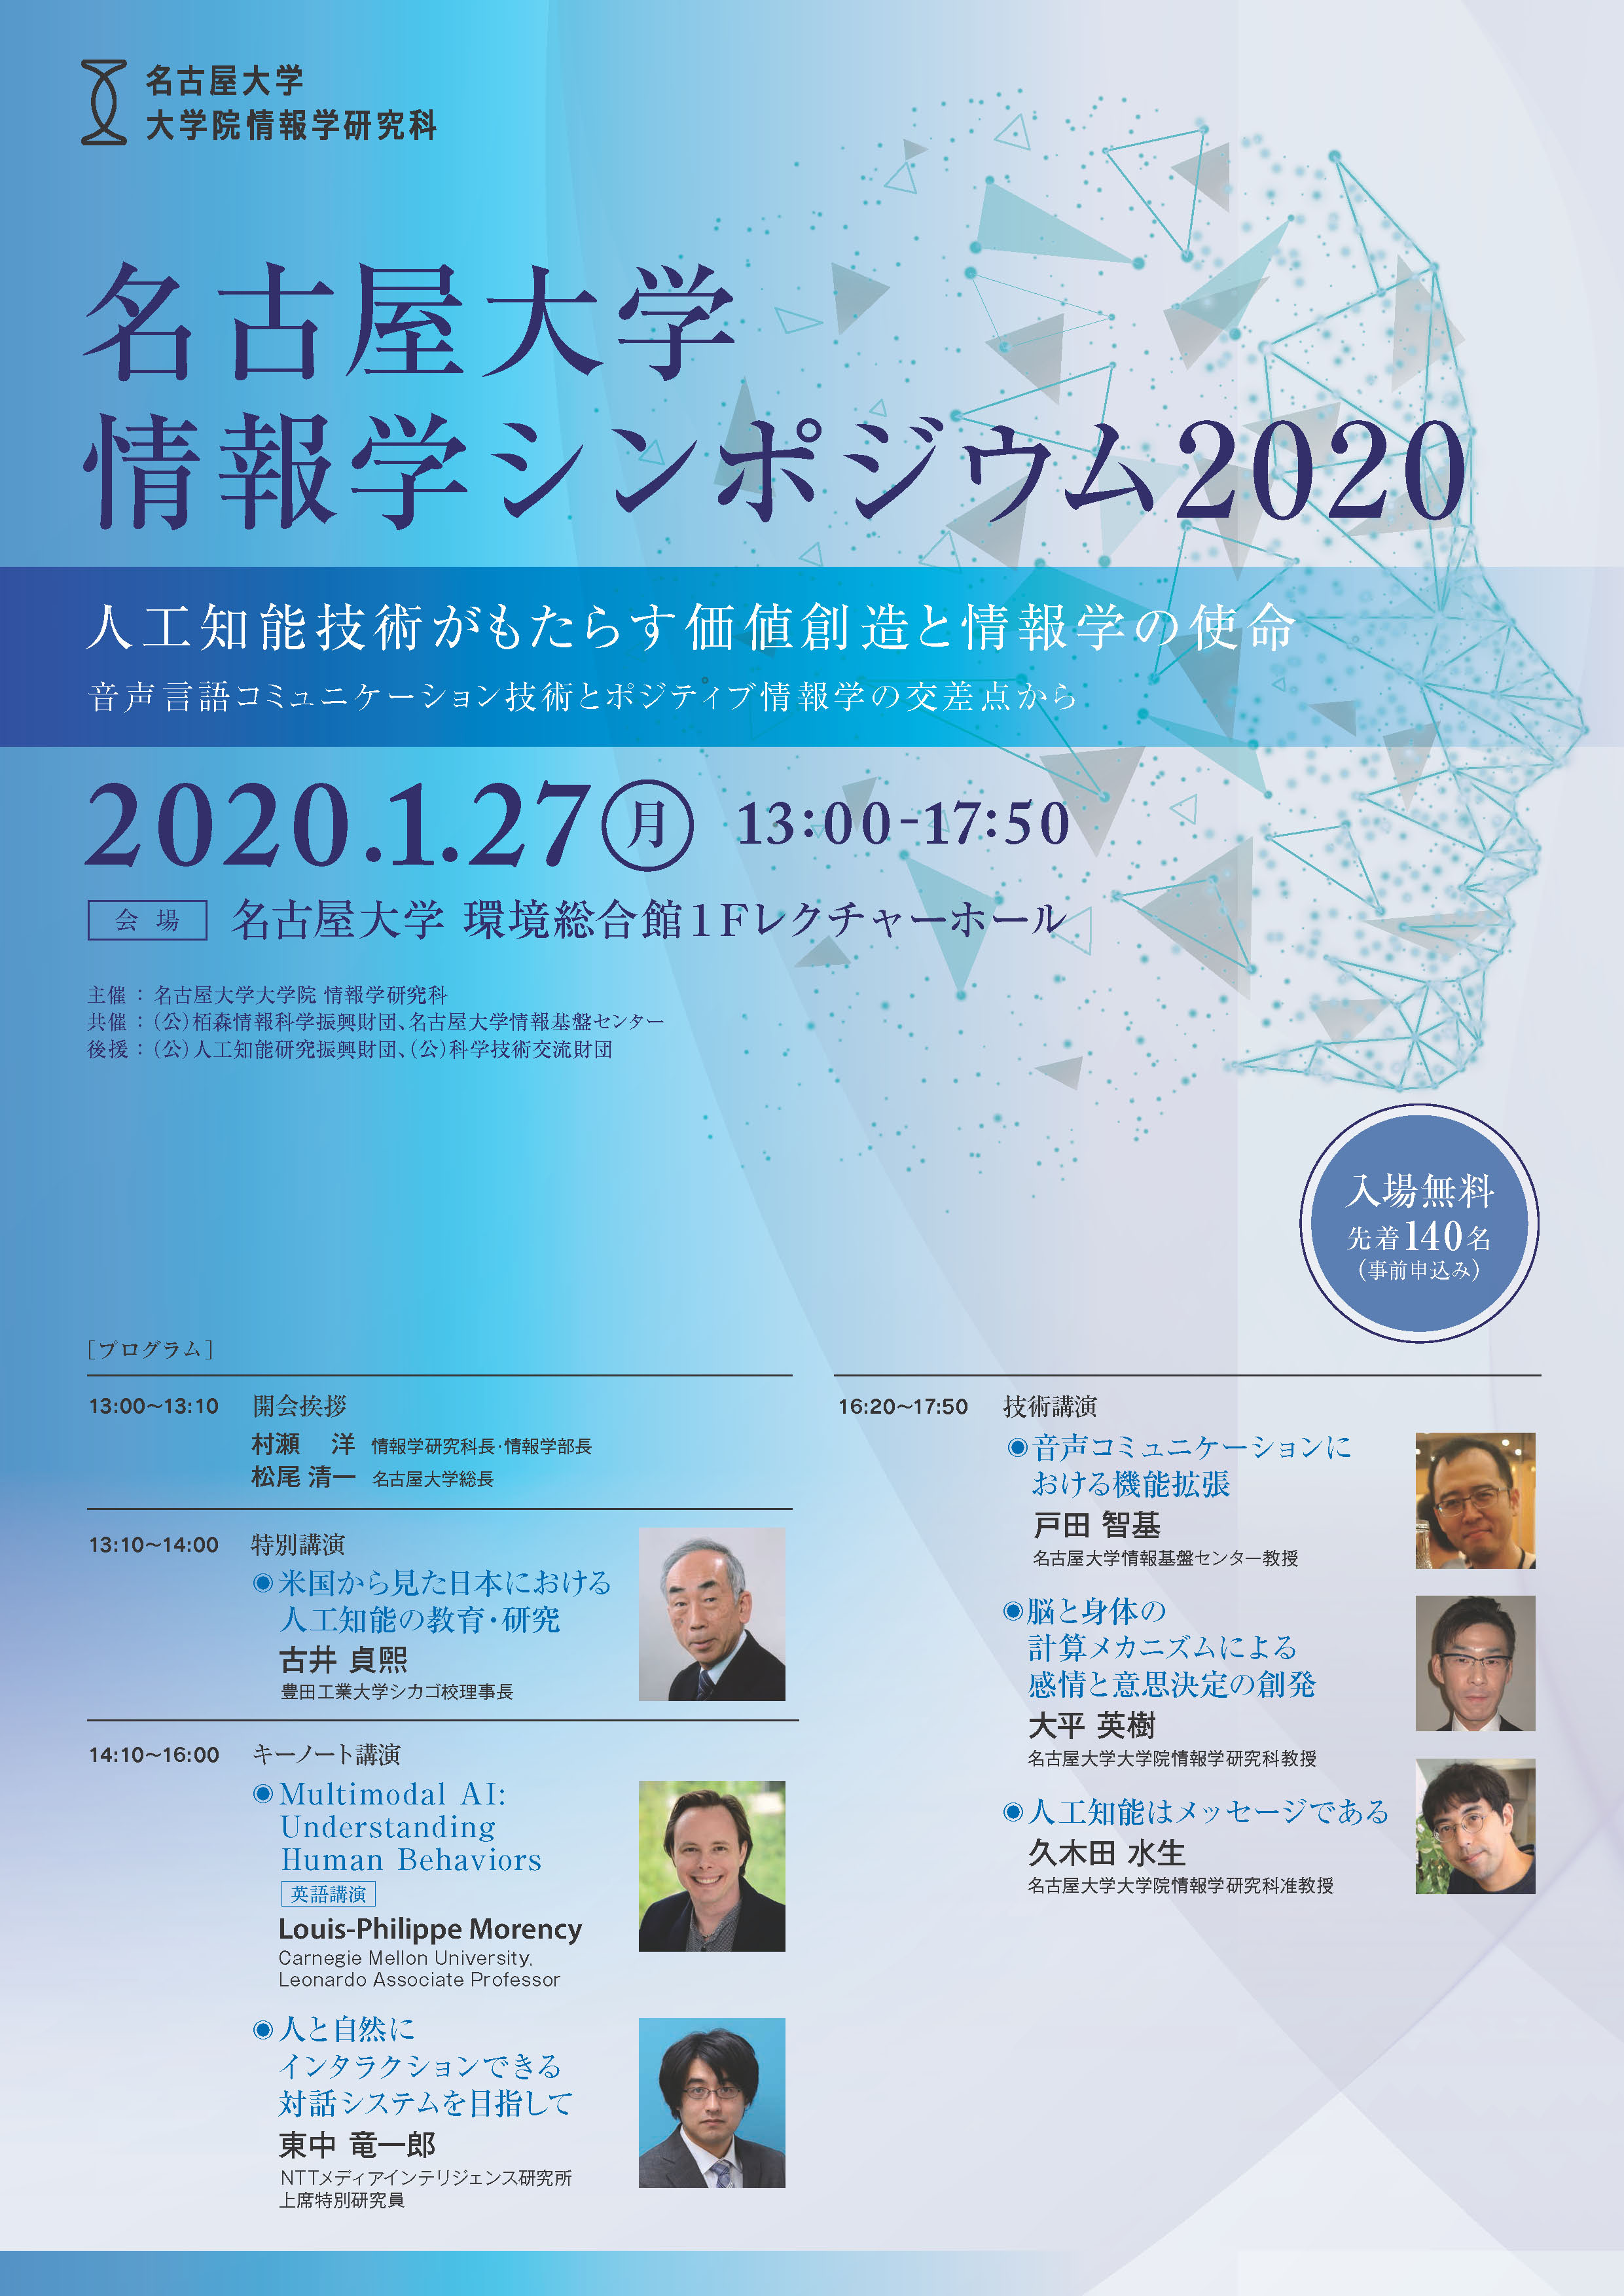 名古屋大学情報学シンポジウム を開催します 年1月27日開催 名古屋大学情報学部 大学院情報学研究科